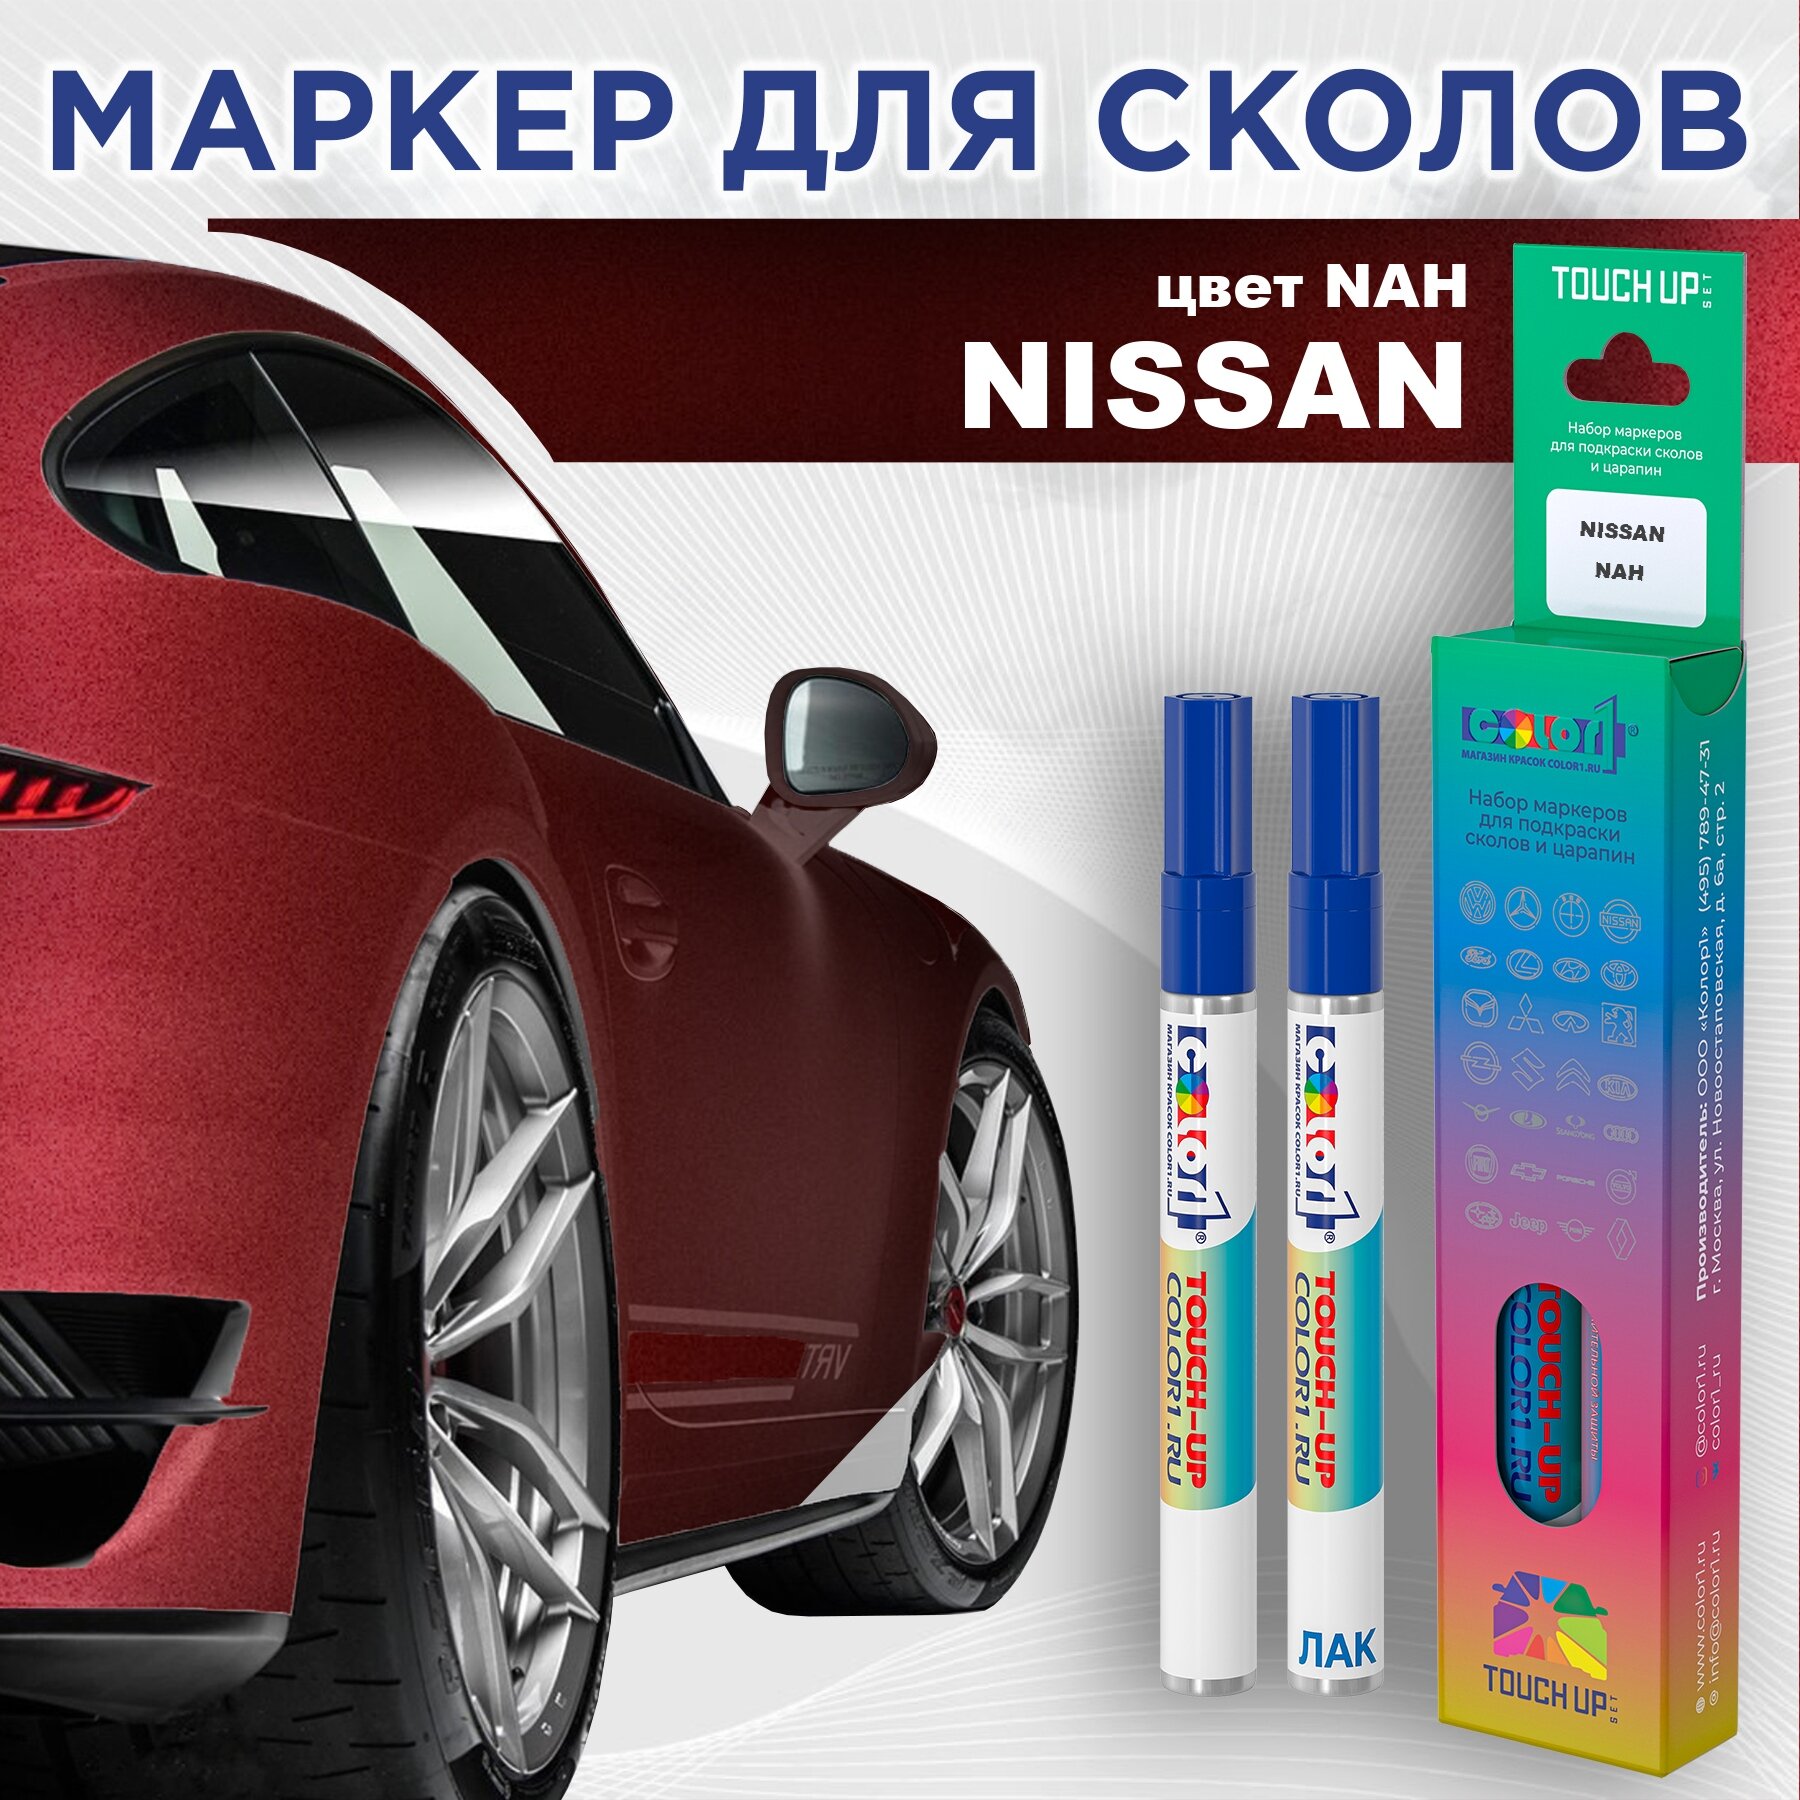 Набор маркеров (маркер с краской и маркер с лаком) для закраски сколов и царапин на автомобиле NISSAN, цвет NAH - FORCE RED, CAYENNE RED